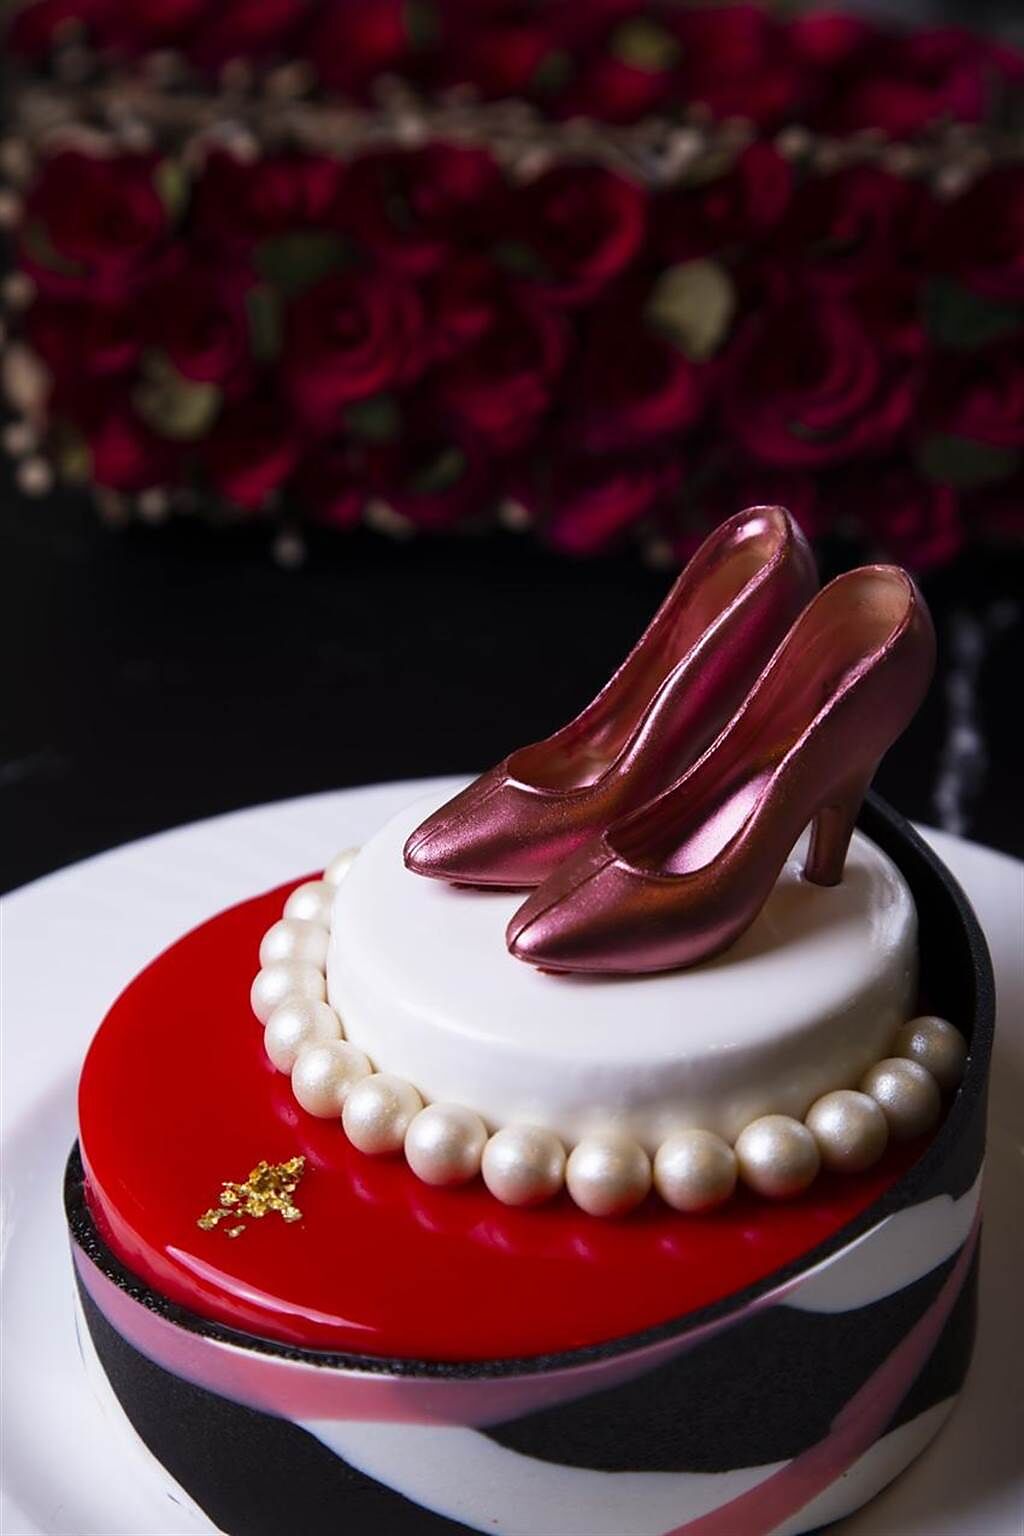 （雲朗觀光母親節蛋糕採「非籠飼雞蛋」製作，旗下雲品溫泉酒店推出紅色高跟鞋與白珍珠造型的「漾媽咪Young」8吋母親節蛋糕。圖／雲朗觀光）